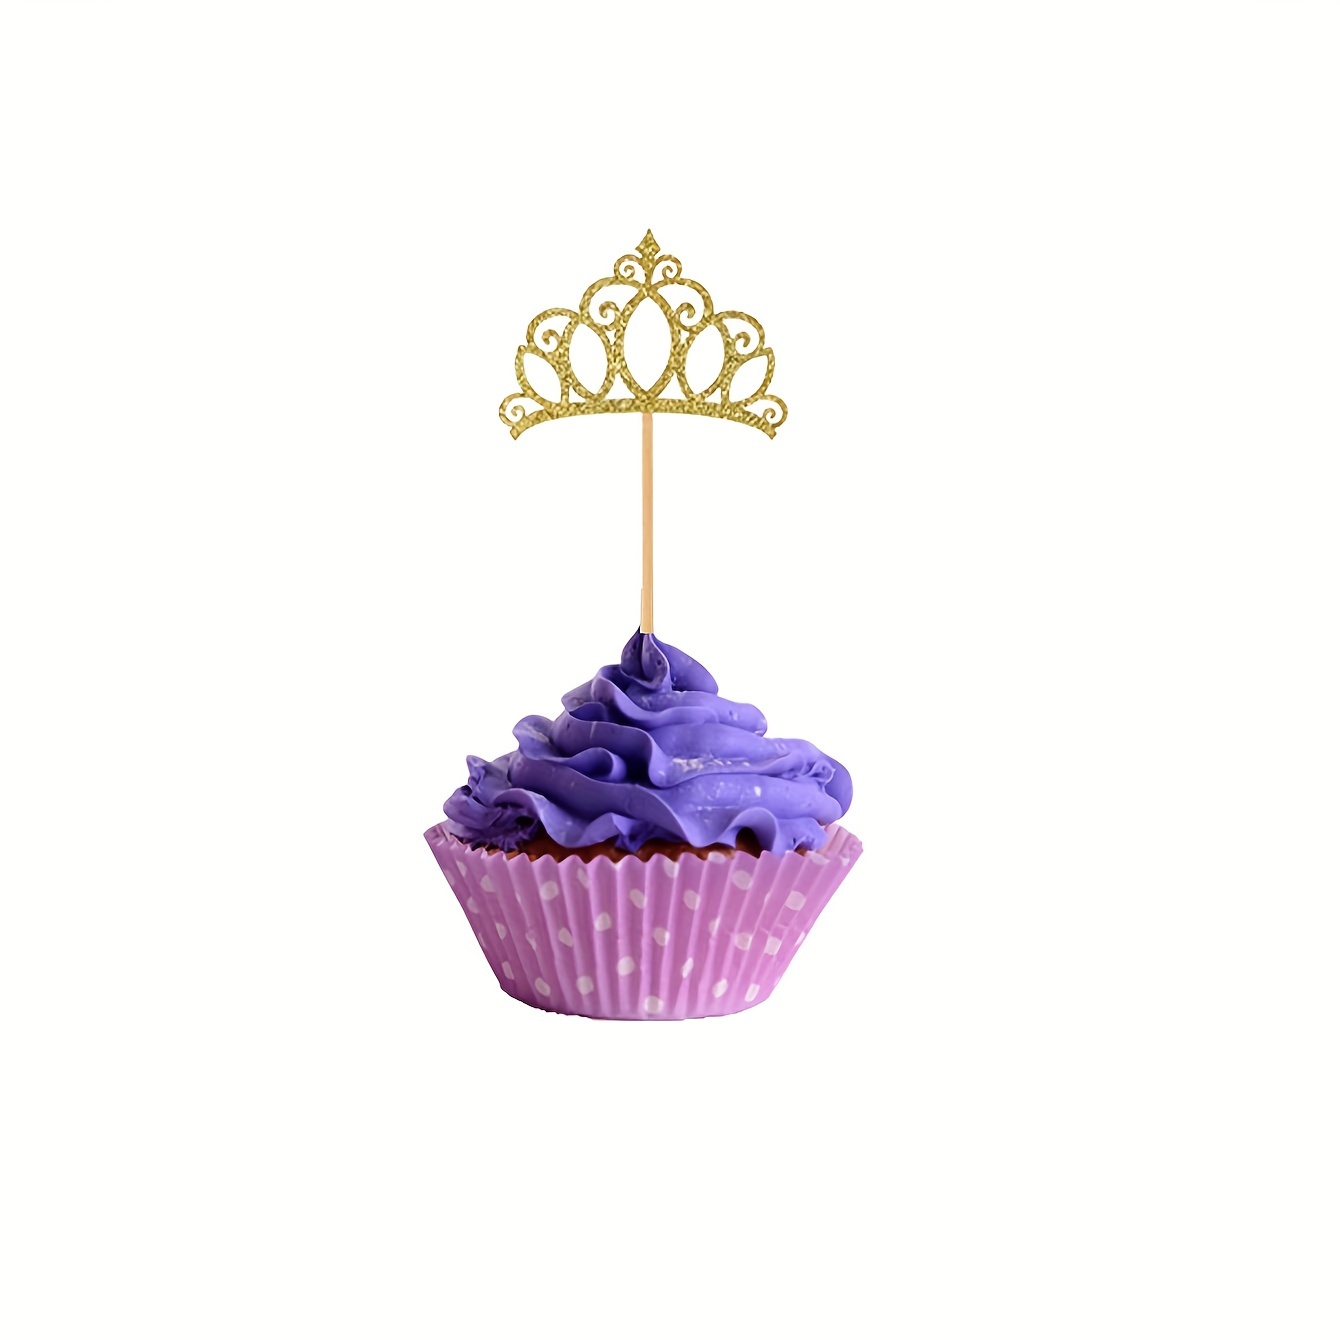 1pc Decorazione Torta Compleanno Corona Principessa - Temu Italy